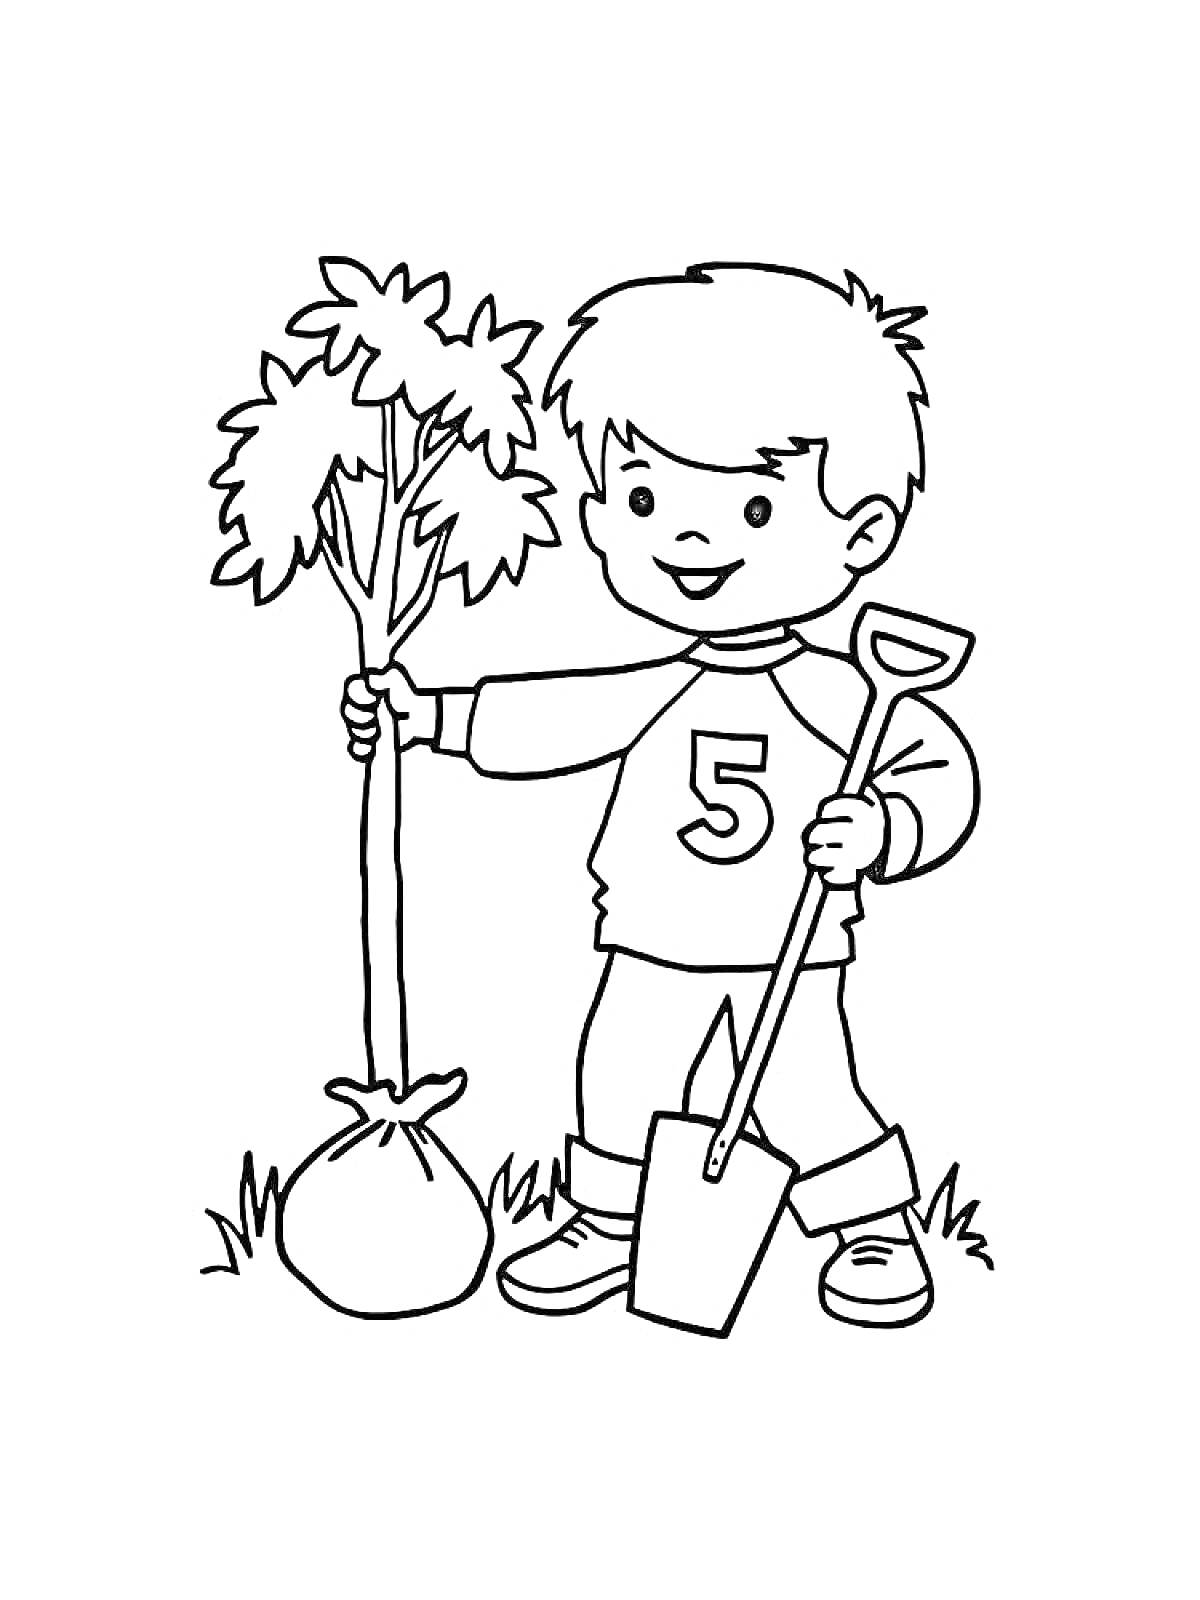 Мальчик с номером 5 на одежде сажает дерево, держа лопату